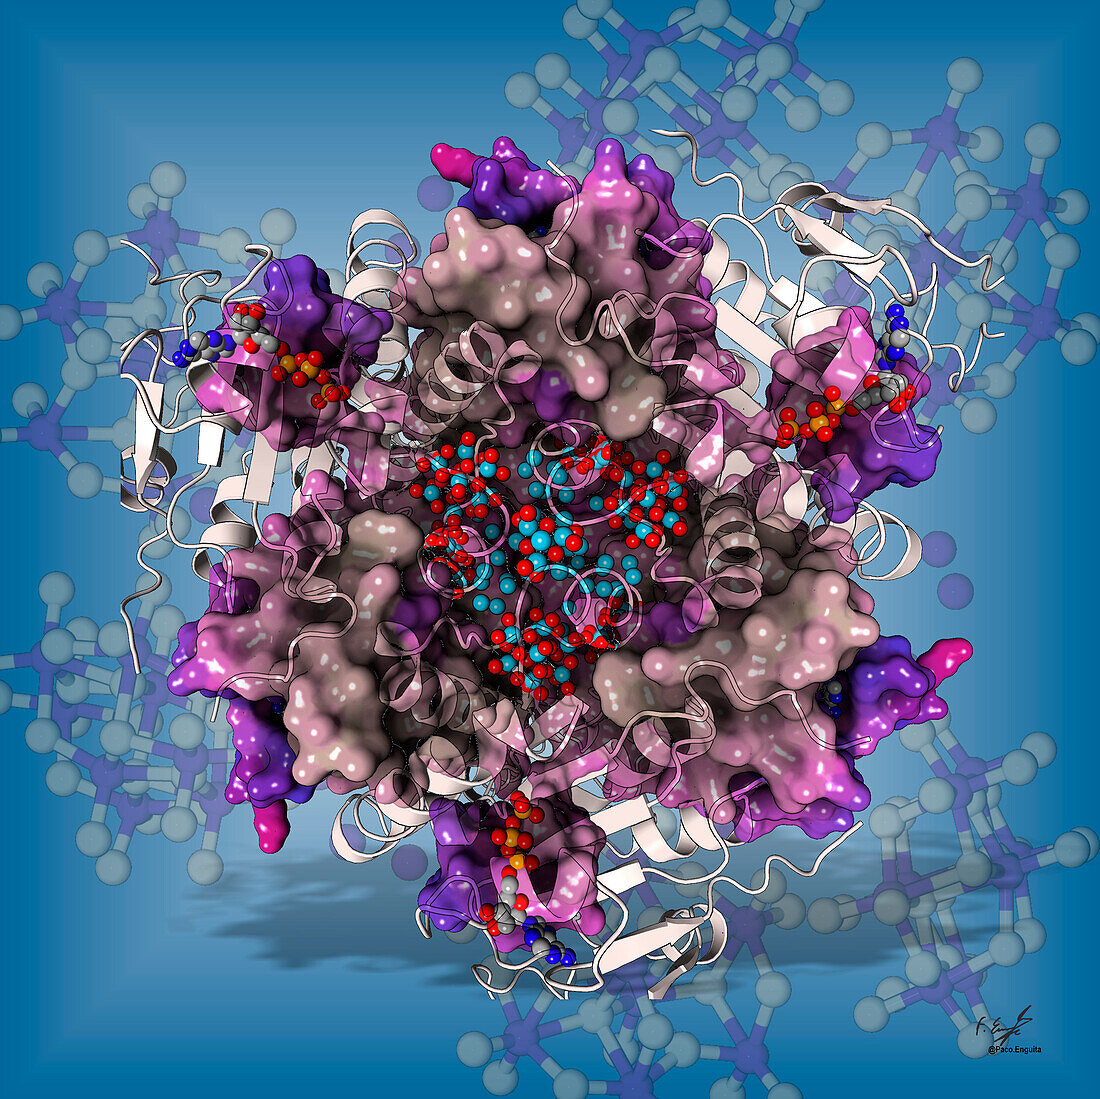 Molybdenum storage protein, illustration